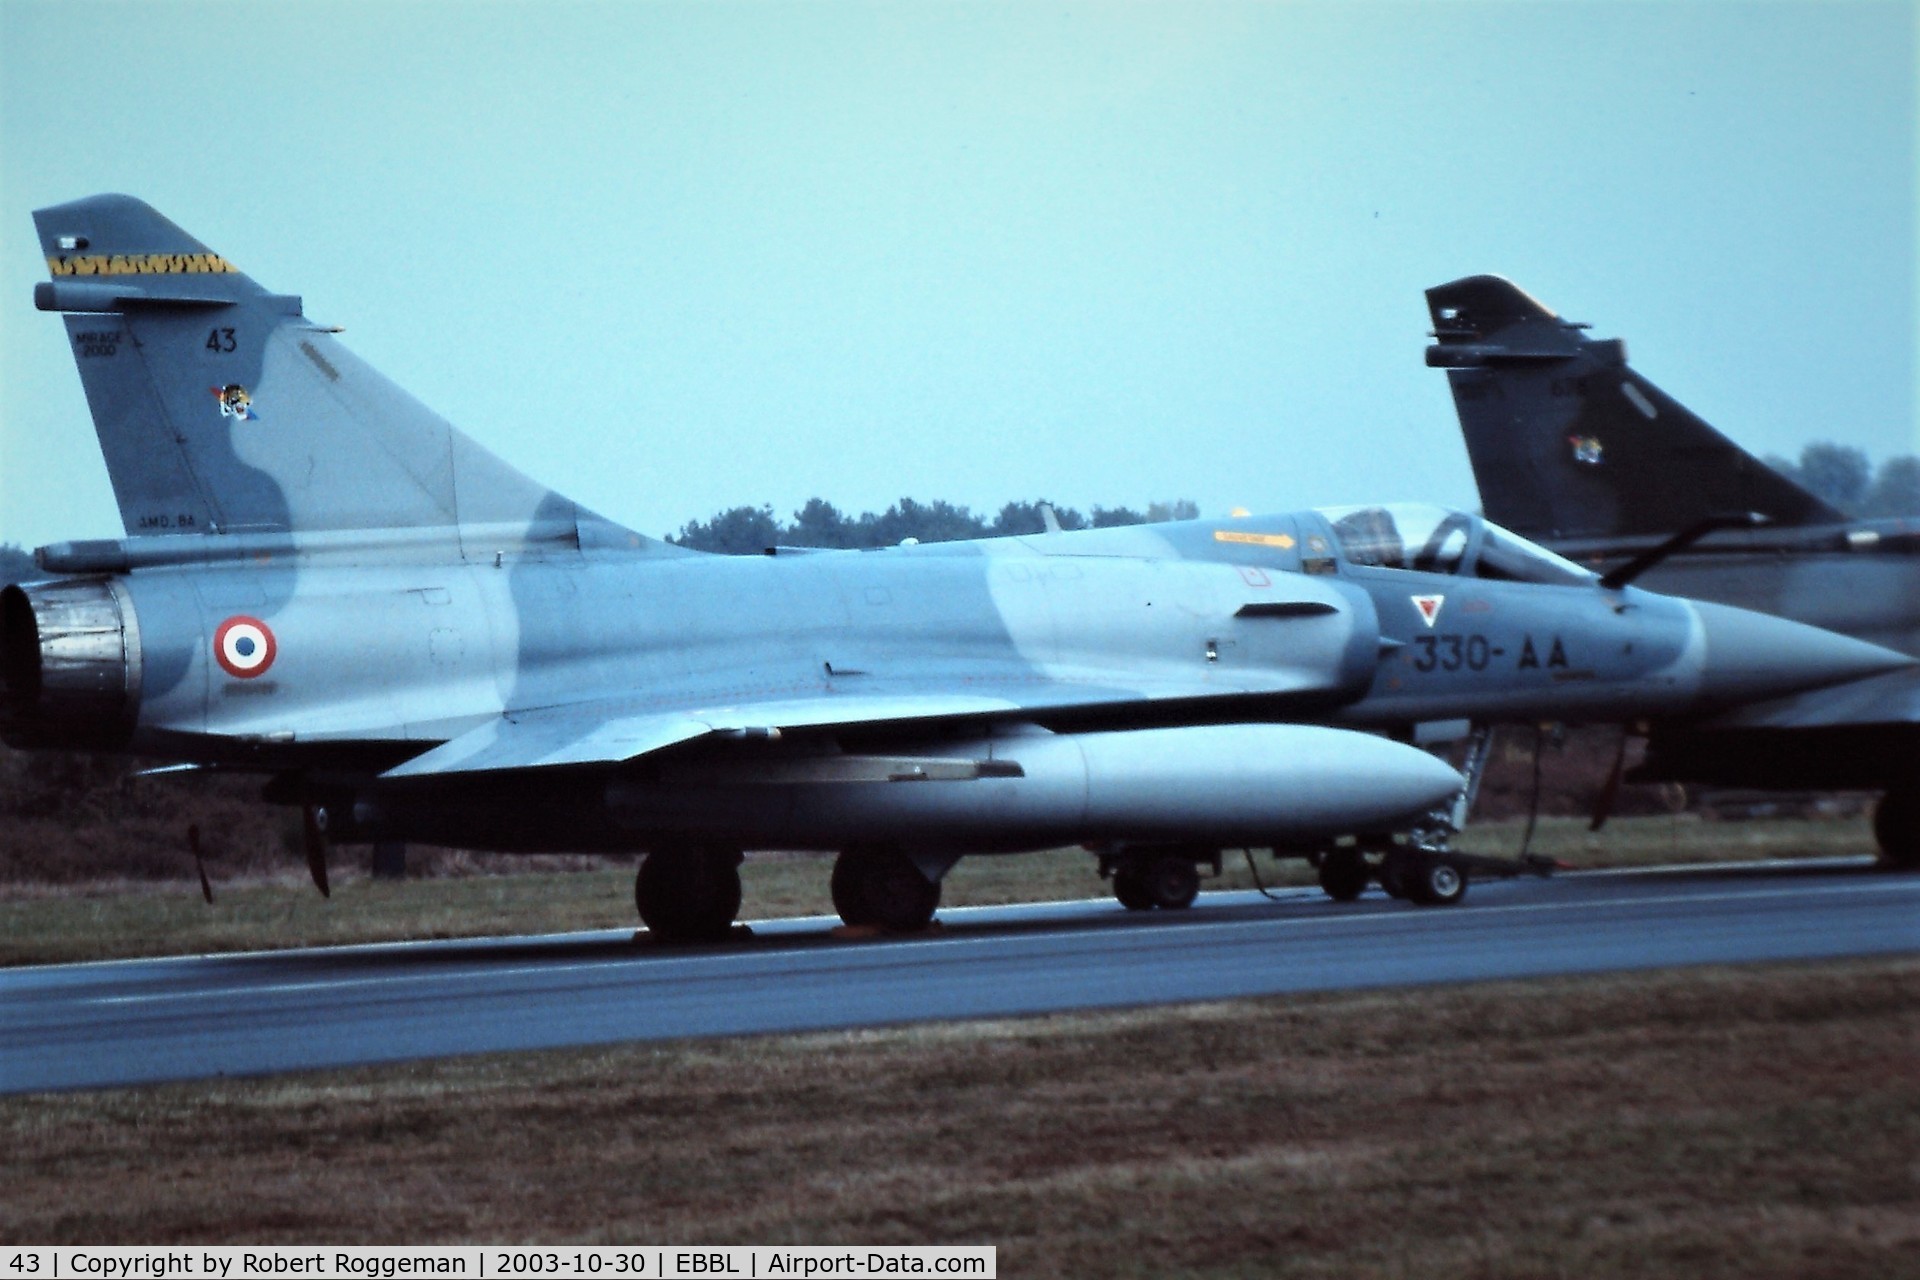 43, Dassault Mirage 2000-5F C/N 43, OPEN DAY.330-AA.